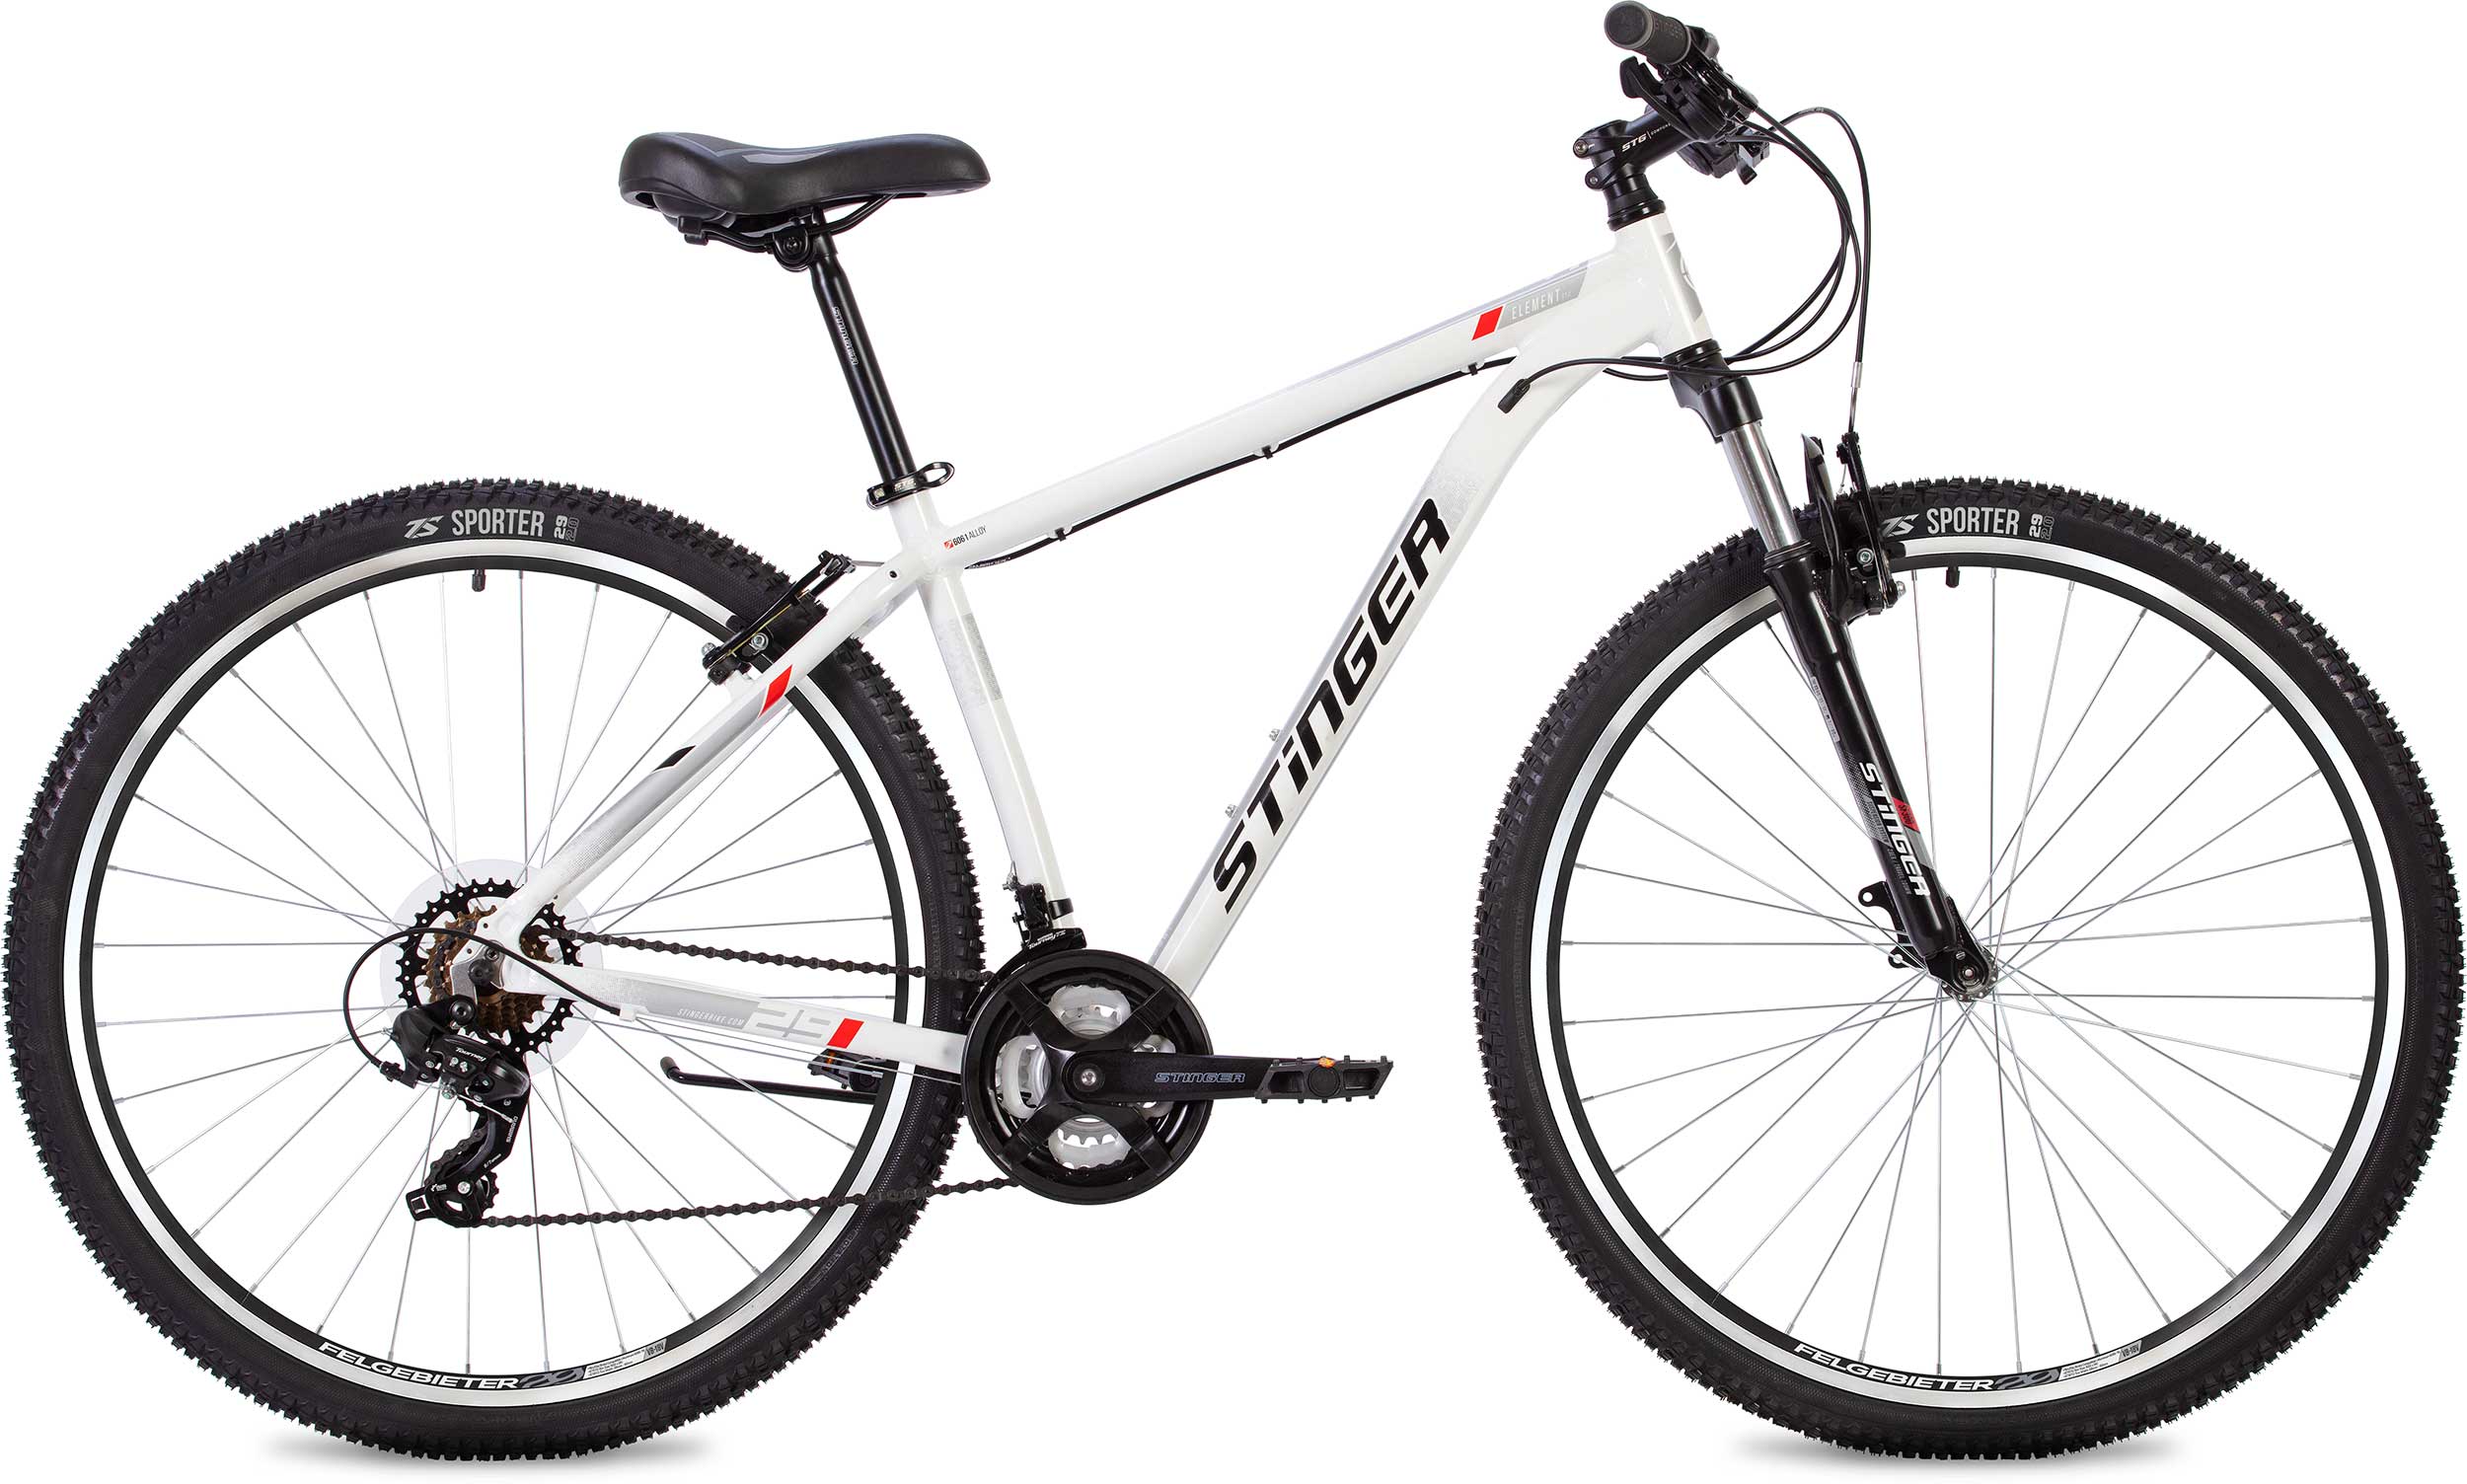  Отзывы о Горном велосипеде Stinger Element STD 29 2020